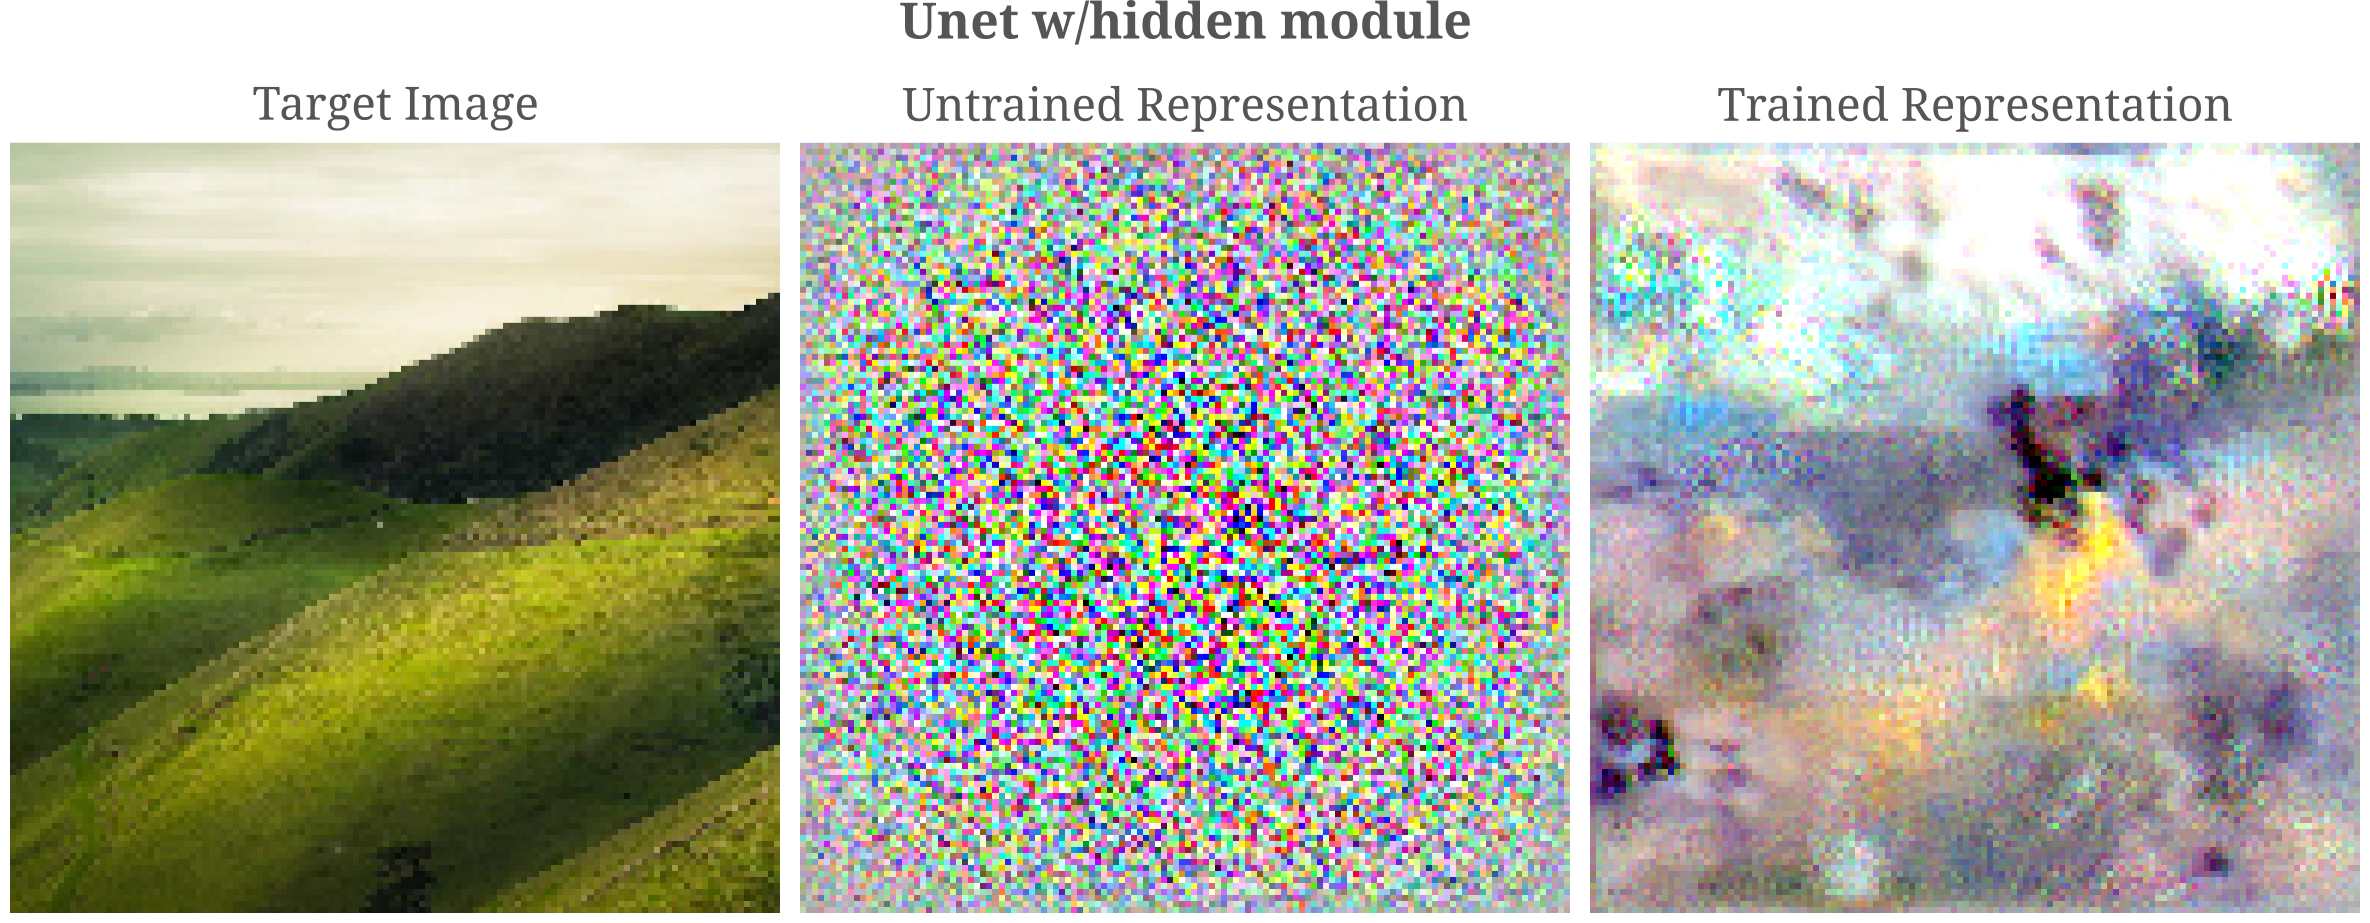 unet hidden module representation